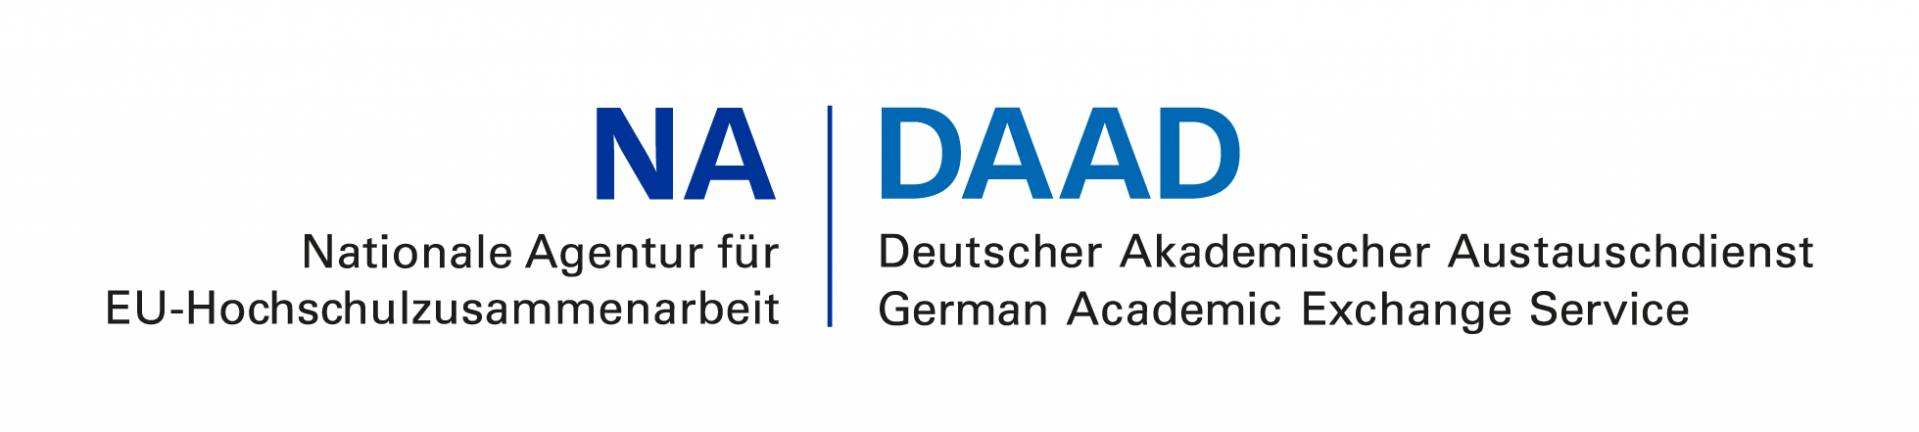 NA DAAD Logo